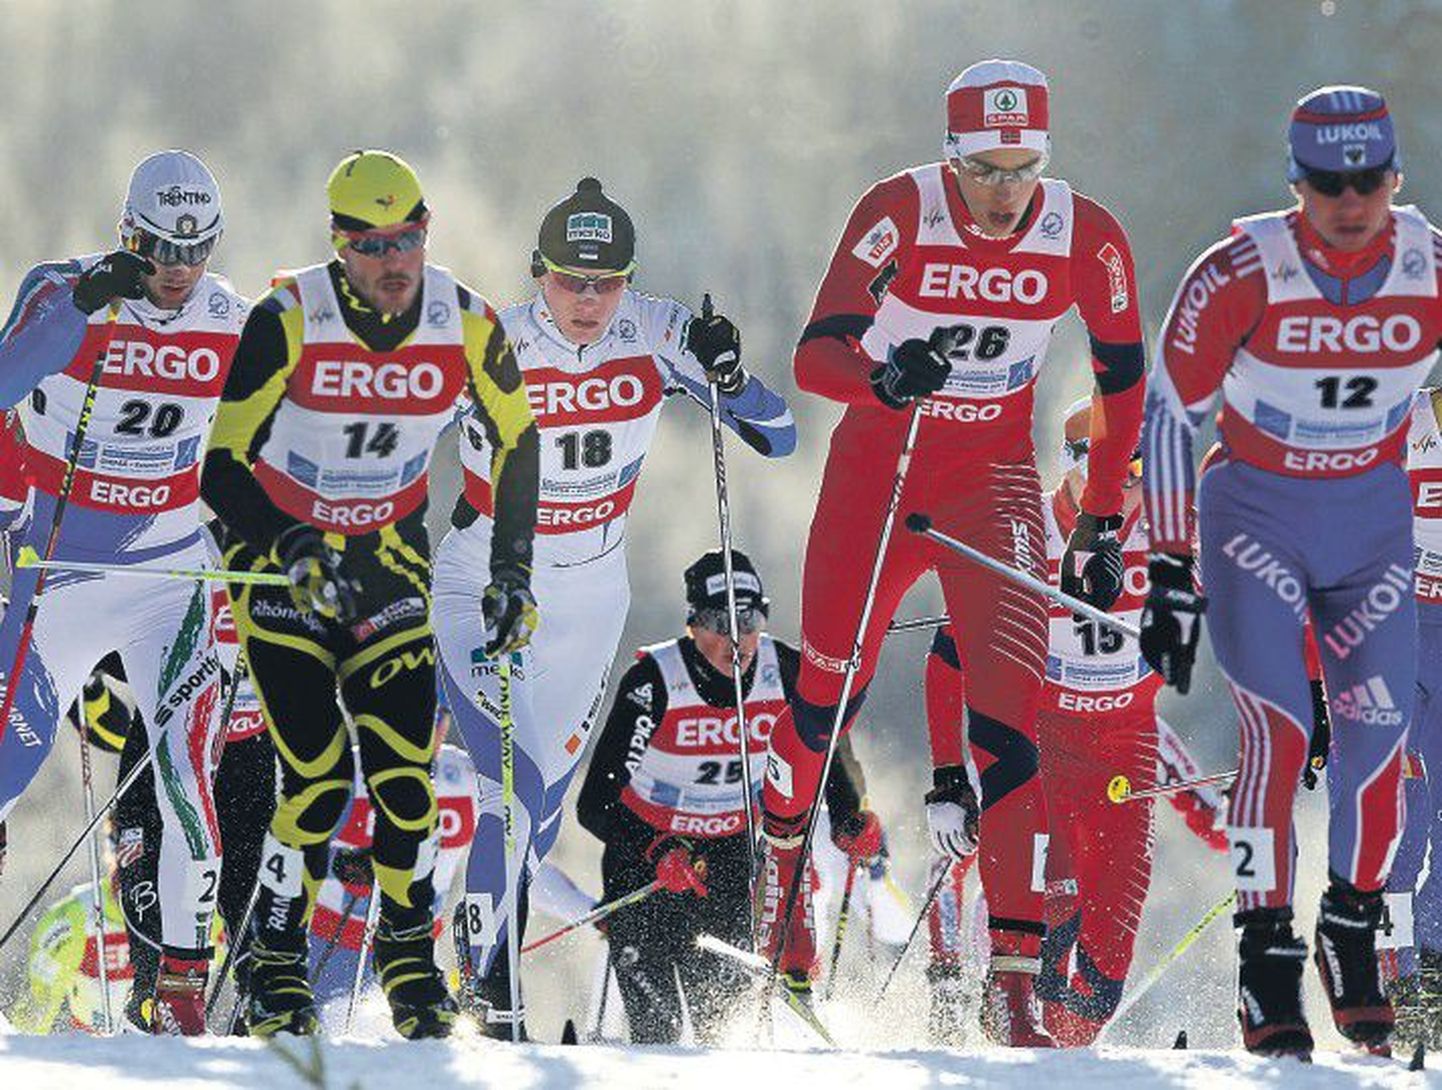 Похоже, что бег на лыжах — это уже не самый сильный зимний вид спорта в Эстонии. По крайней мере, результаты ЧМ U-23 указывают именно на это. Лучший молодой спортсмен в гонке со сменой лыж Карел Таммъярв (№18) занял лишь девятое место. А вот в двоеборье и прыжках с трамплина Каарел Нурмсалу получил три бронзовые медали.